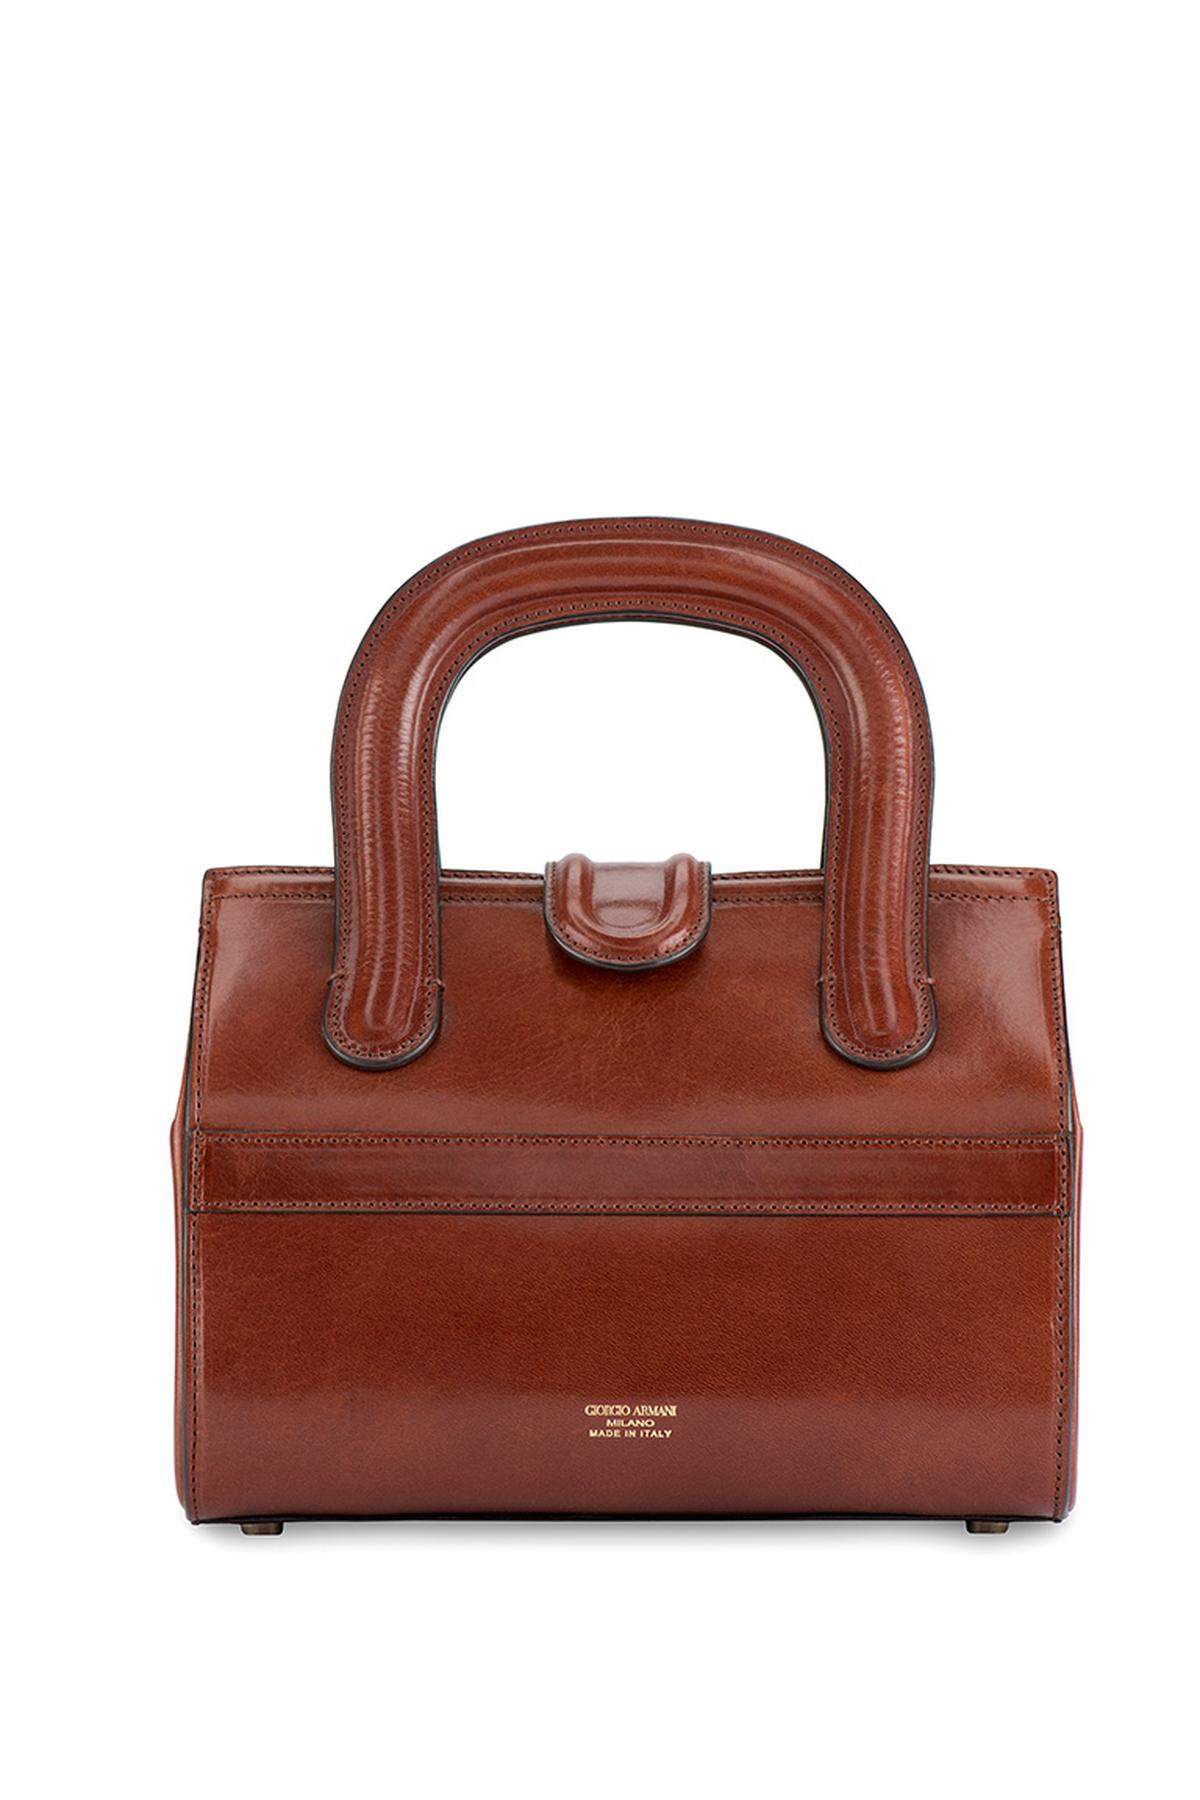 Für alle Taschenfans empfiehlt sich jene aus braunem Leder von Giorgio Armani.